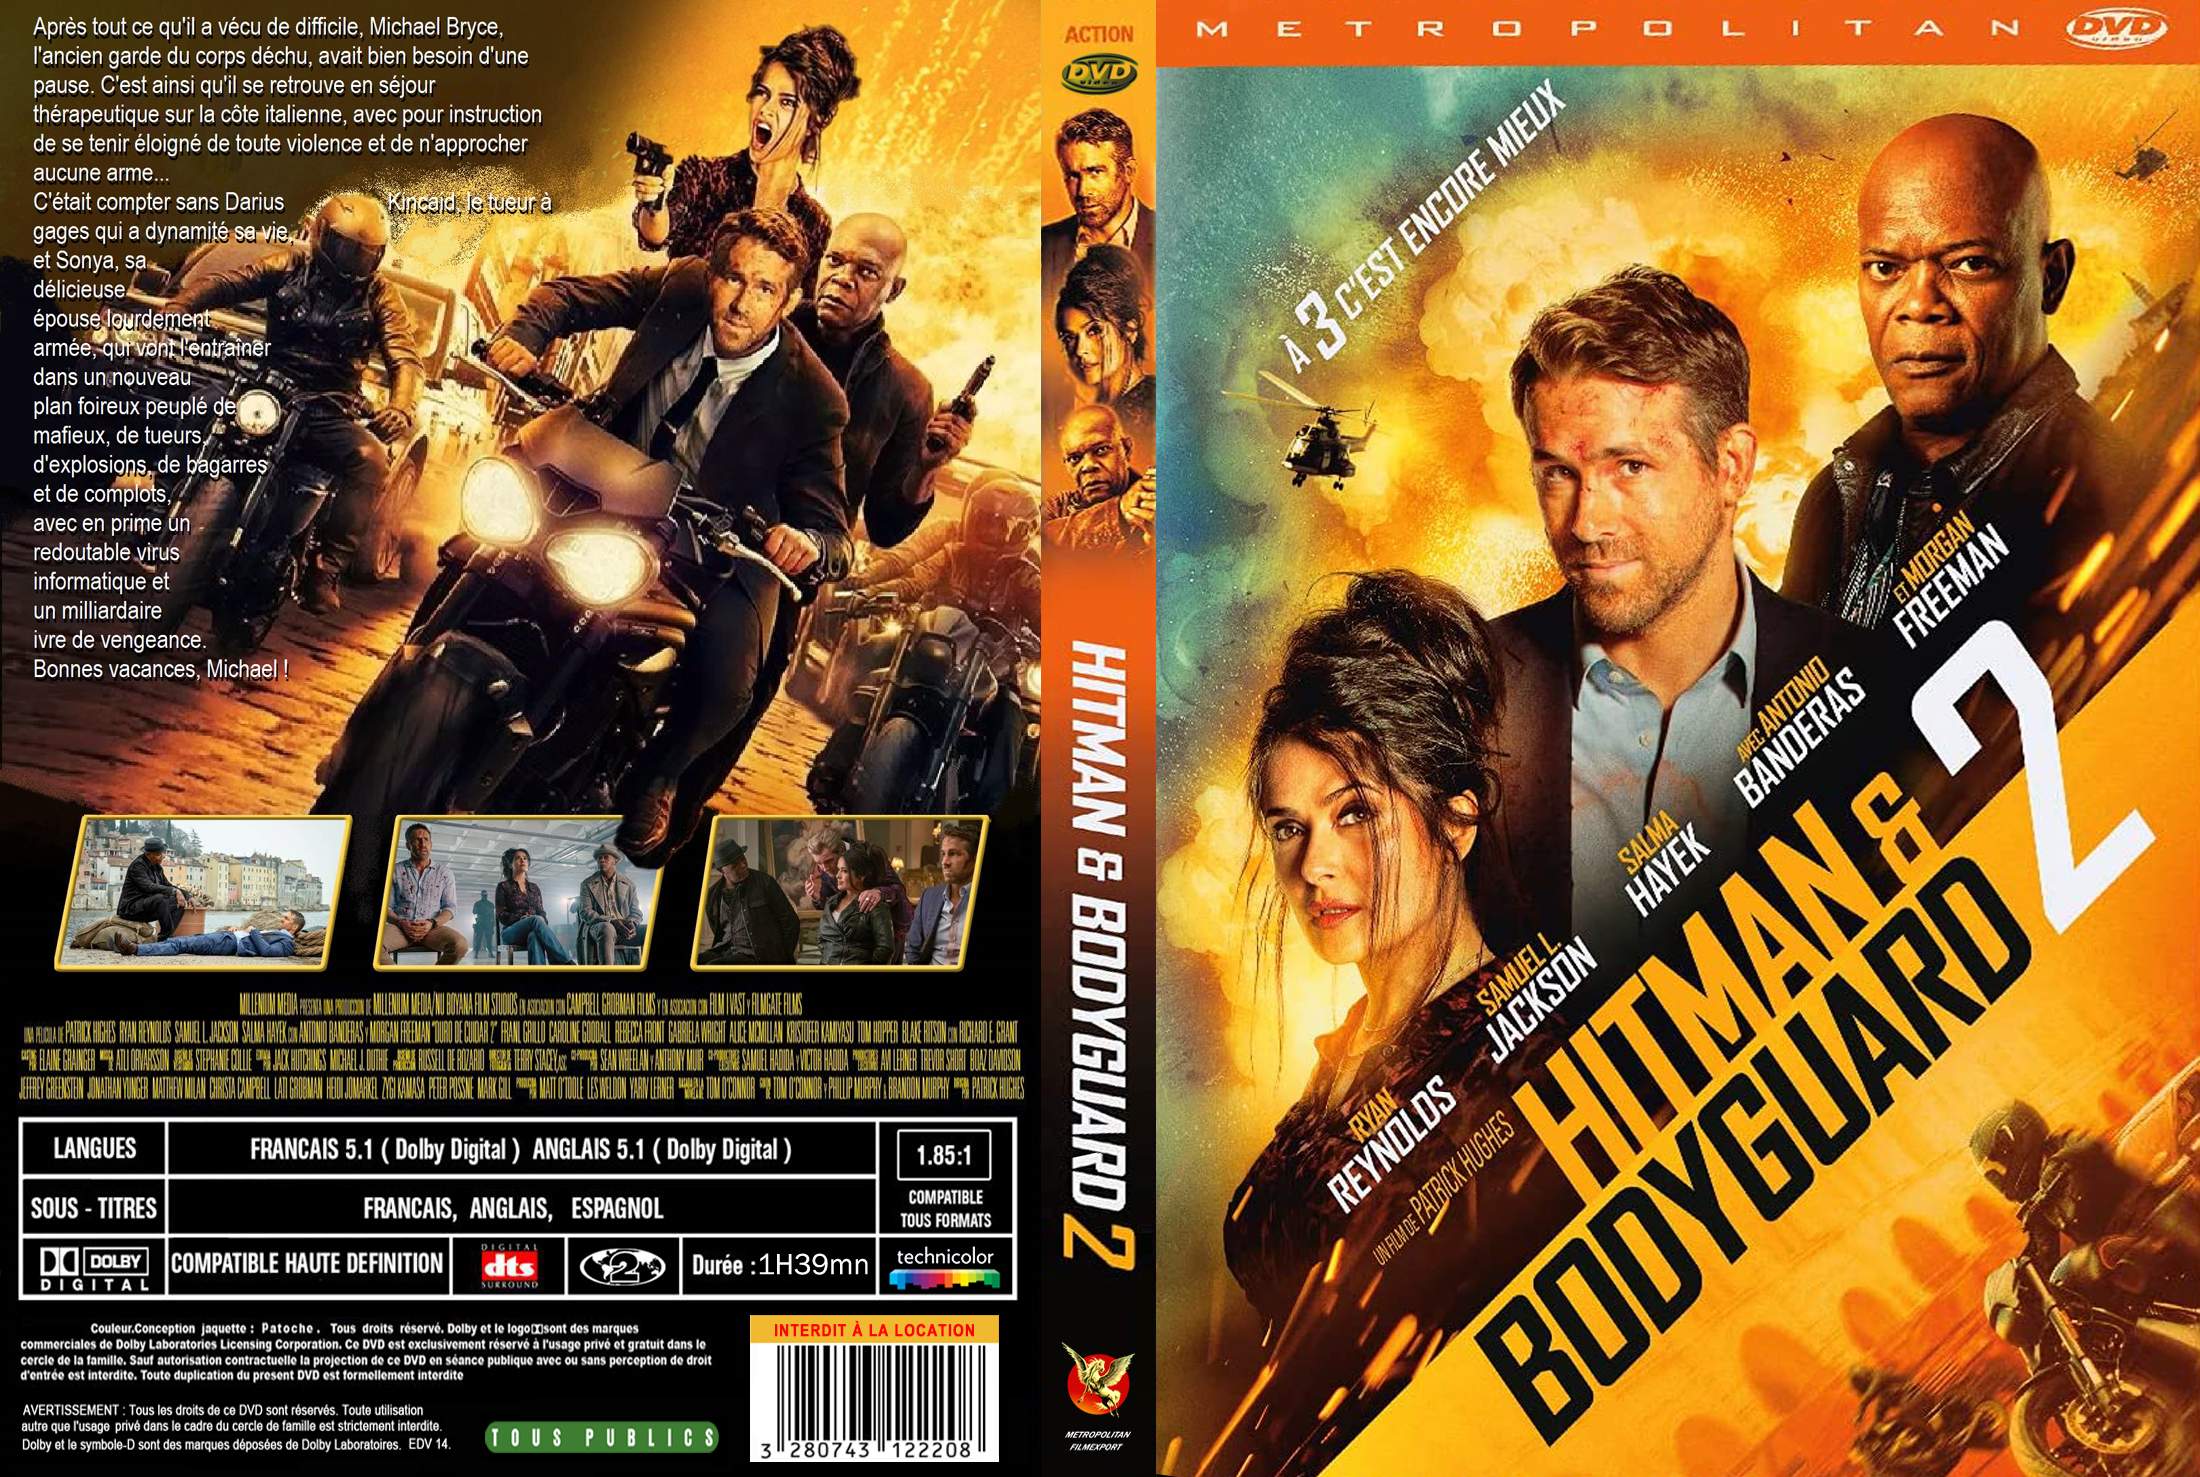 Jaquette DVD Hitman & Bodyguard 2 custom v2